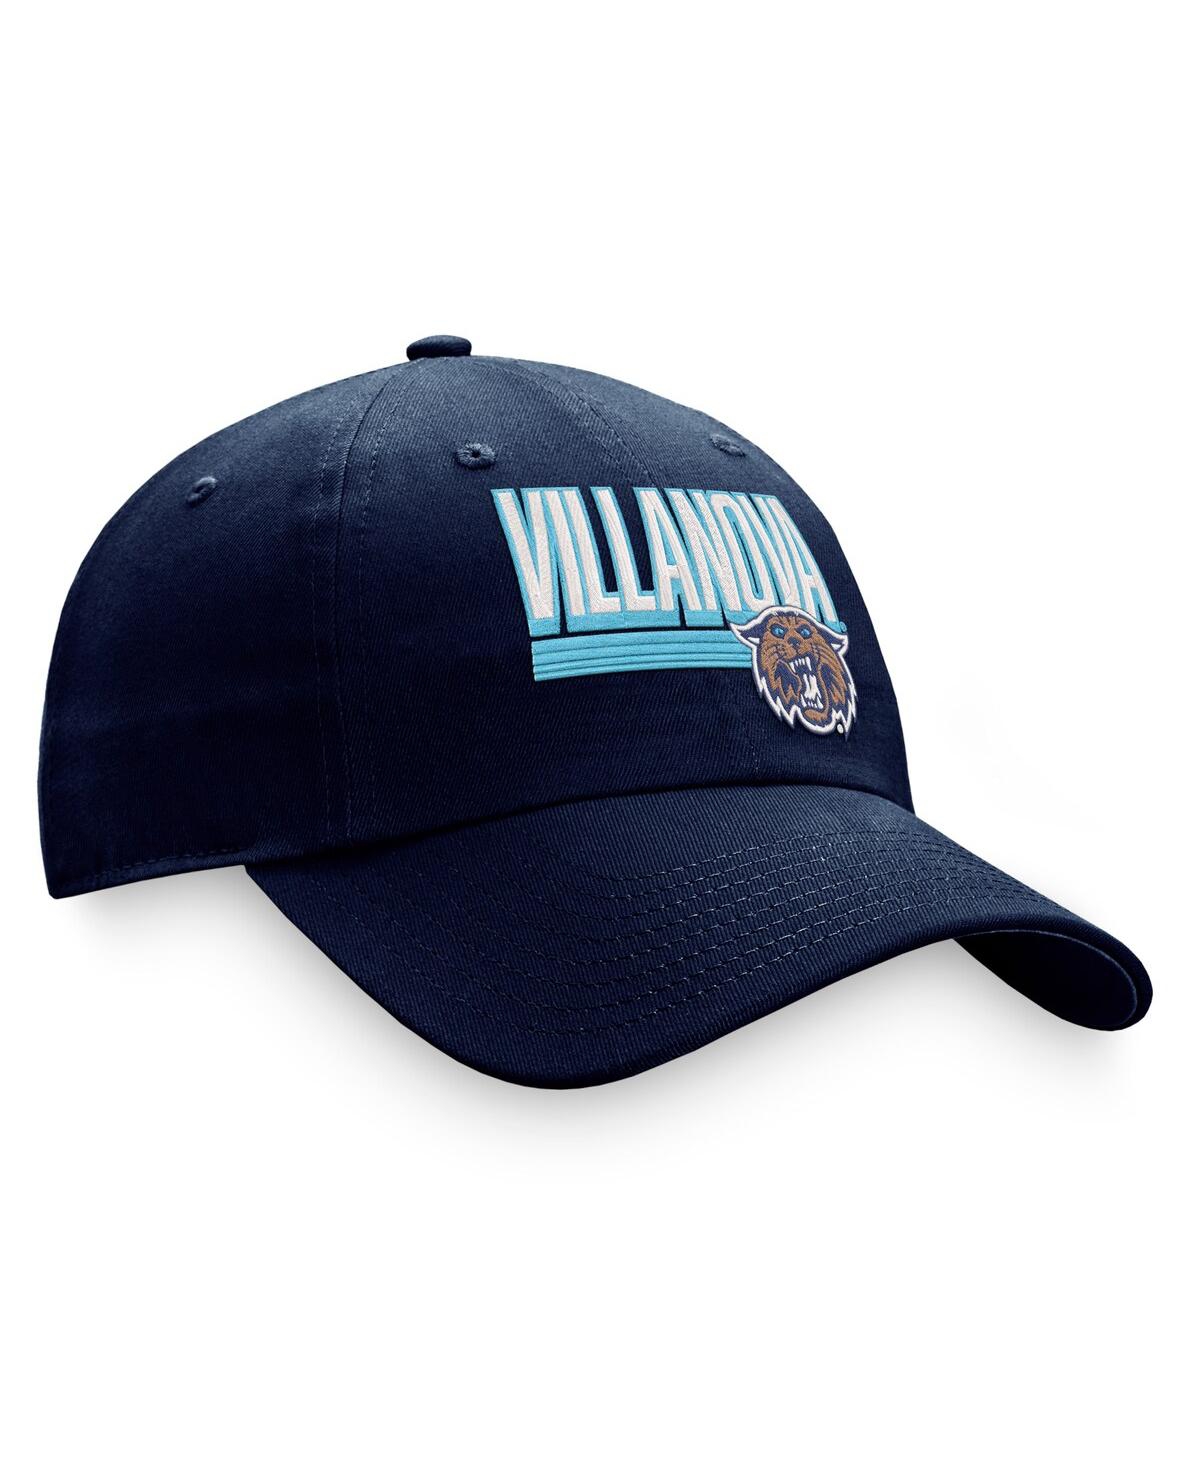 Shop Top Of The World Men's  Navy Villanova Wildcats Slice Adjustable Hat